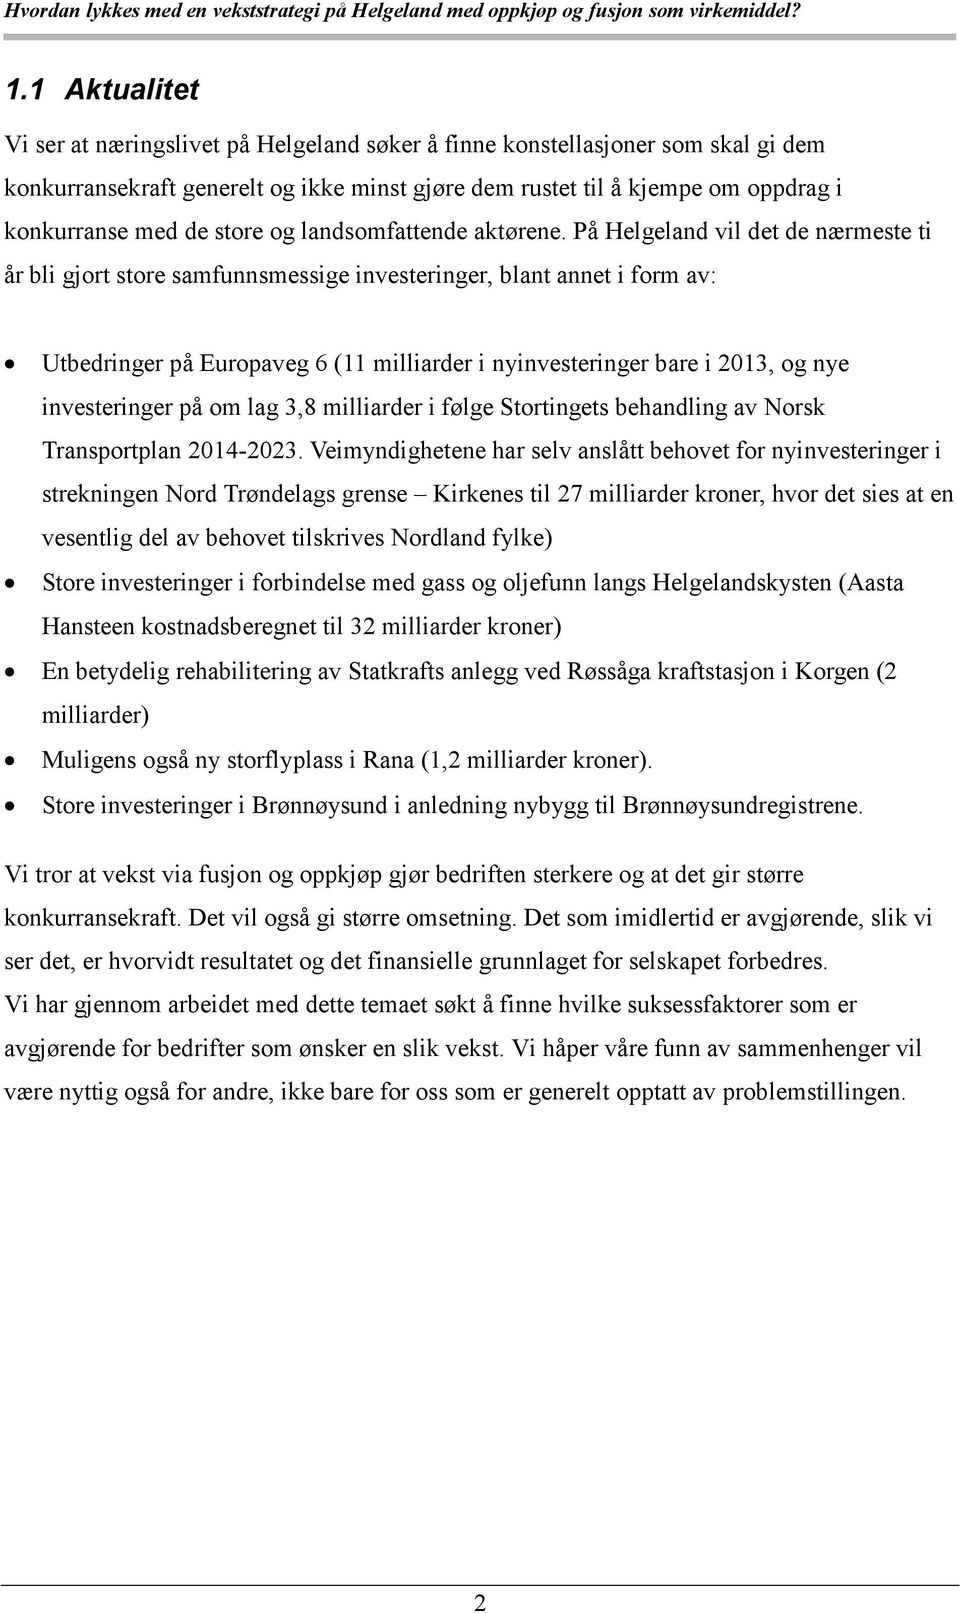 På Helgeland vil det de nærmeste ti år bli gjort store samfunnsmessige investeringer, blant annet i form av: Utbedringer på Europaveg 6 (11 milliarder i nyinvesteringer bare i 2013, og nye